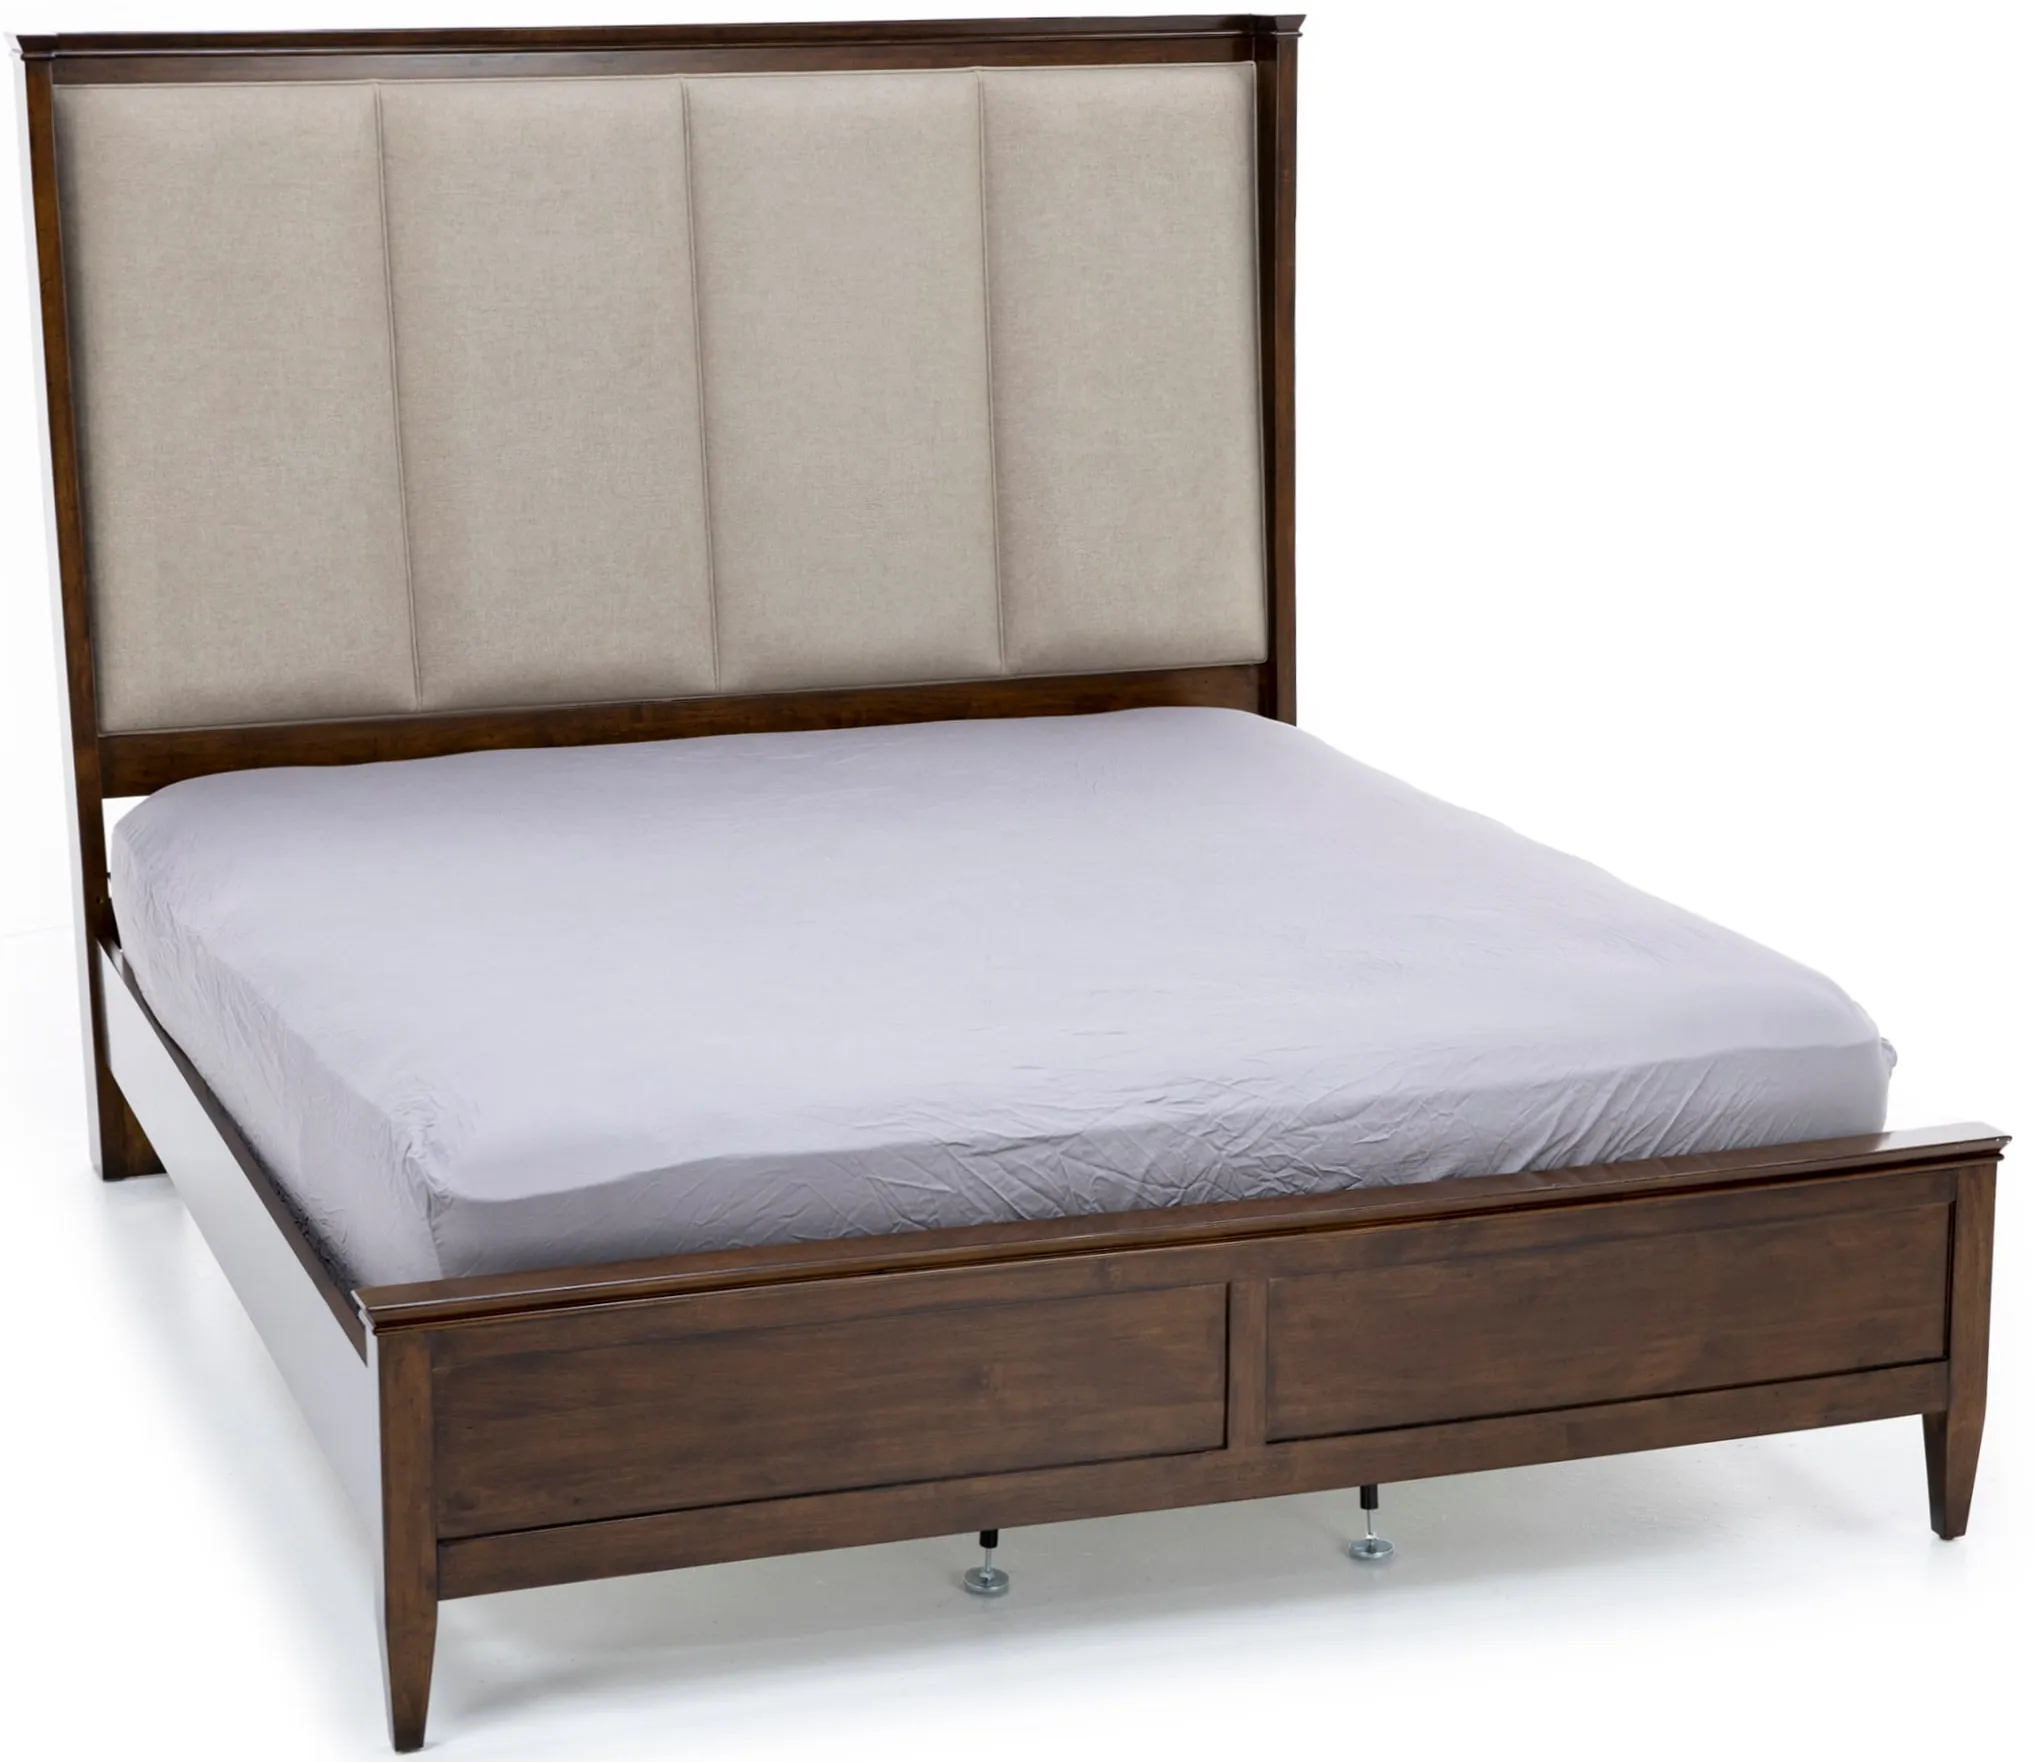 Elise Queen Upholstered Shelter Bed